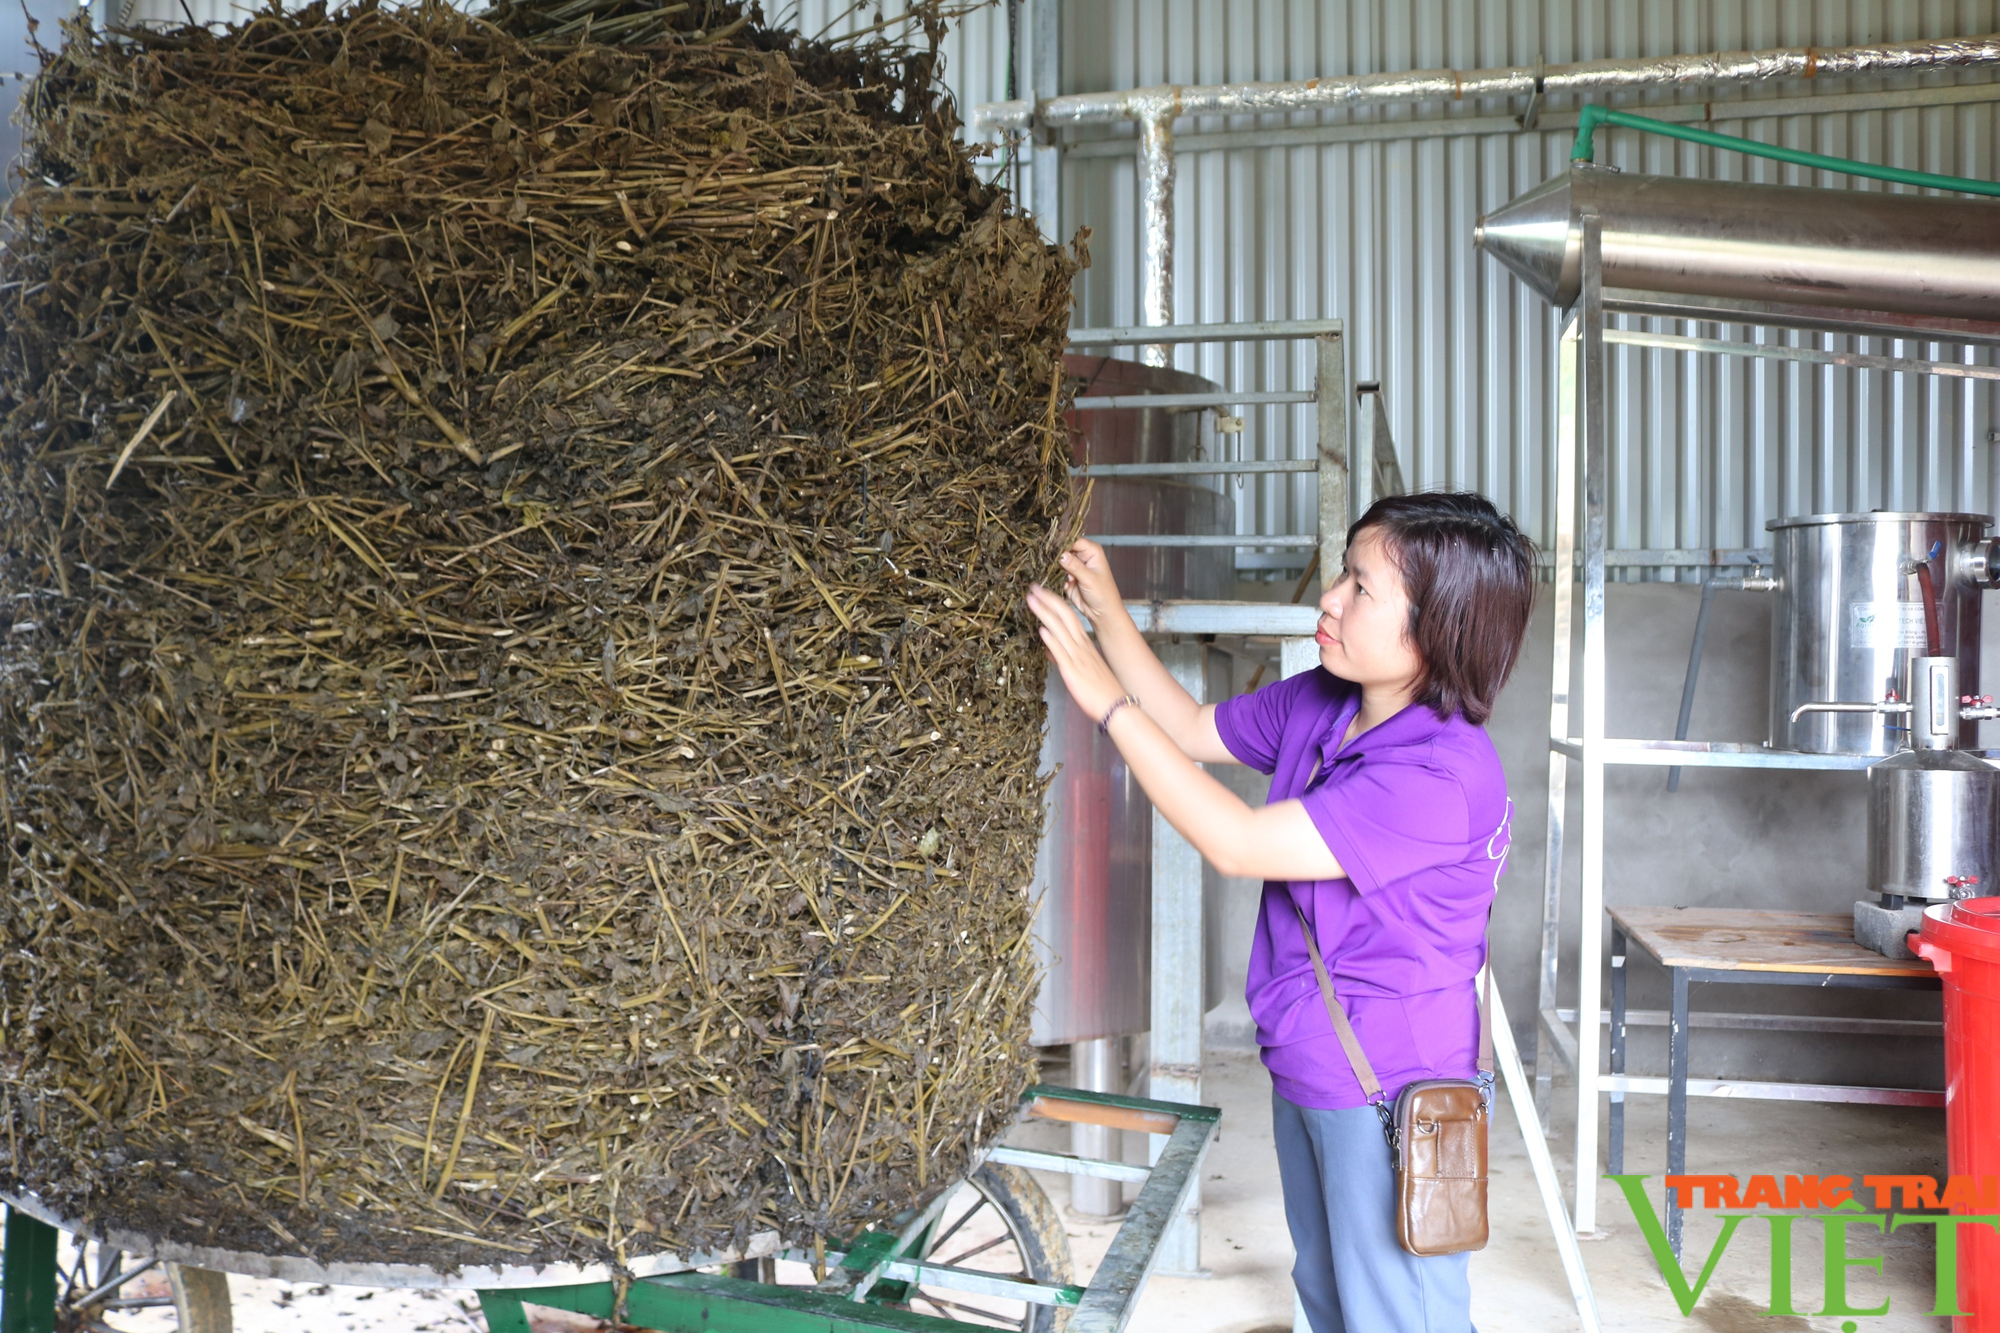 Người phụ nữ quê lúa Thái Bình khởi nghiệp trên đất Sa Pa từ cây tía tô - Ảnh 4.